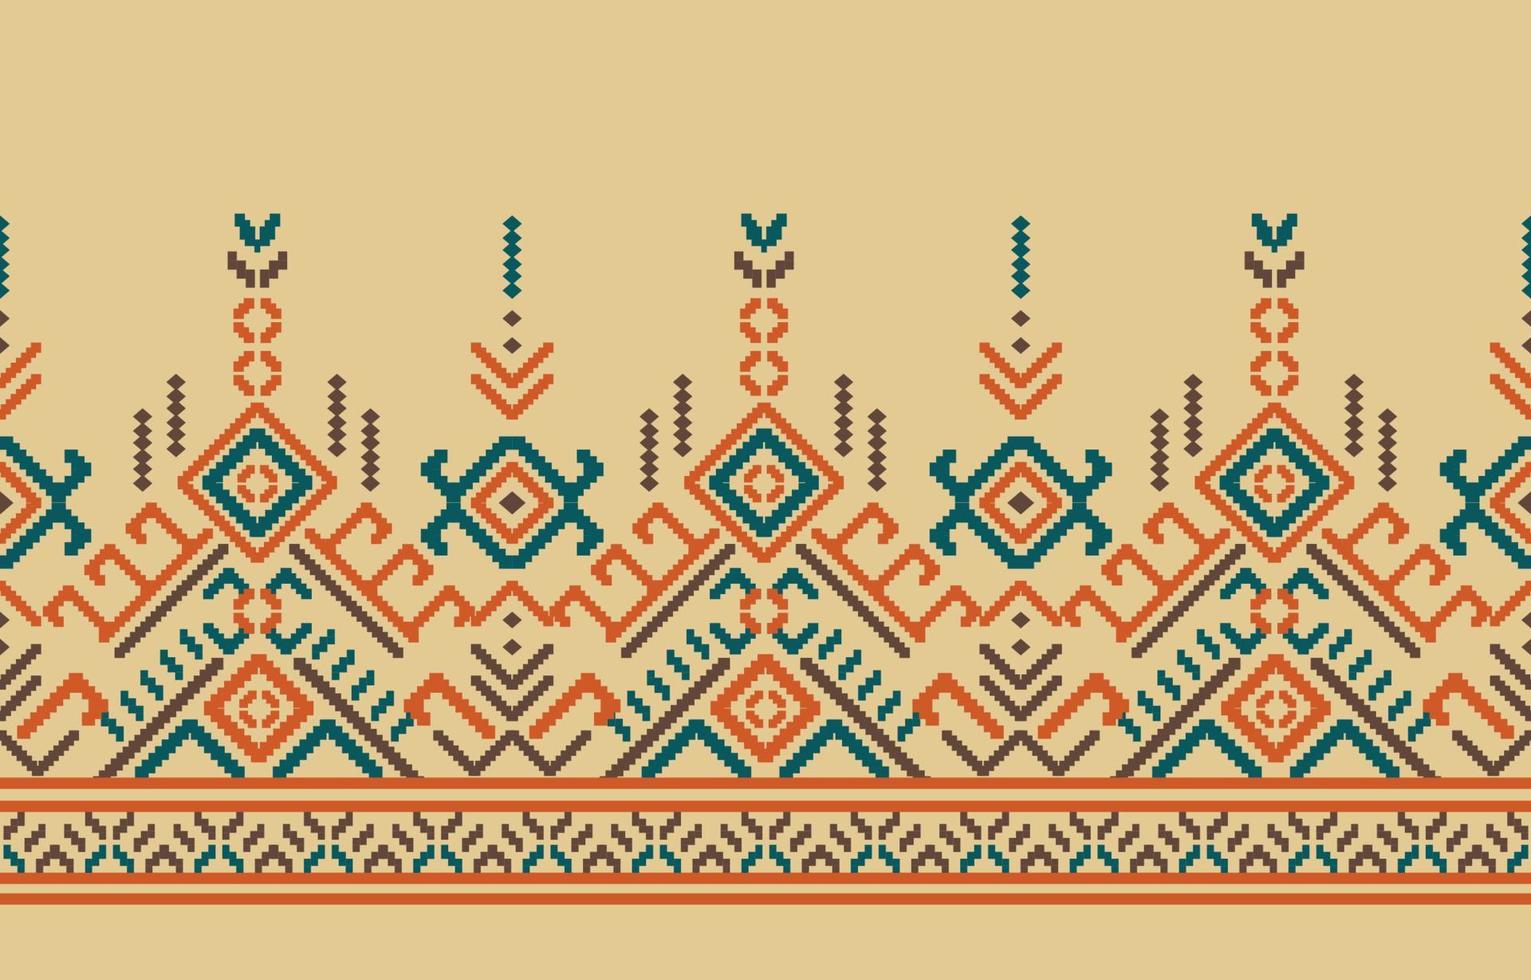 mooie etnische geometrische textiel grens ornament. handgemaakte borduurstijl Azië, Oezbeekse, Marokkaanse navajo, Indiase, Azteekse, Peruaanse, Turkije patronen. een motief vintage rand is naadloos voor mode. vector